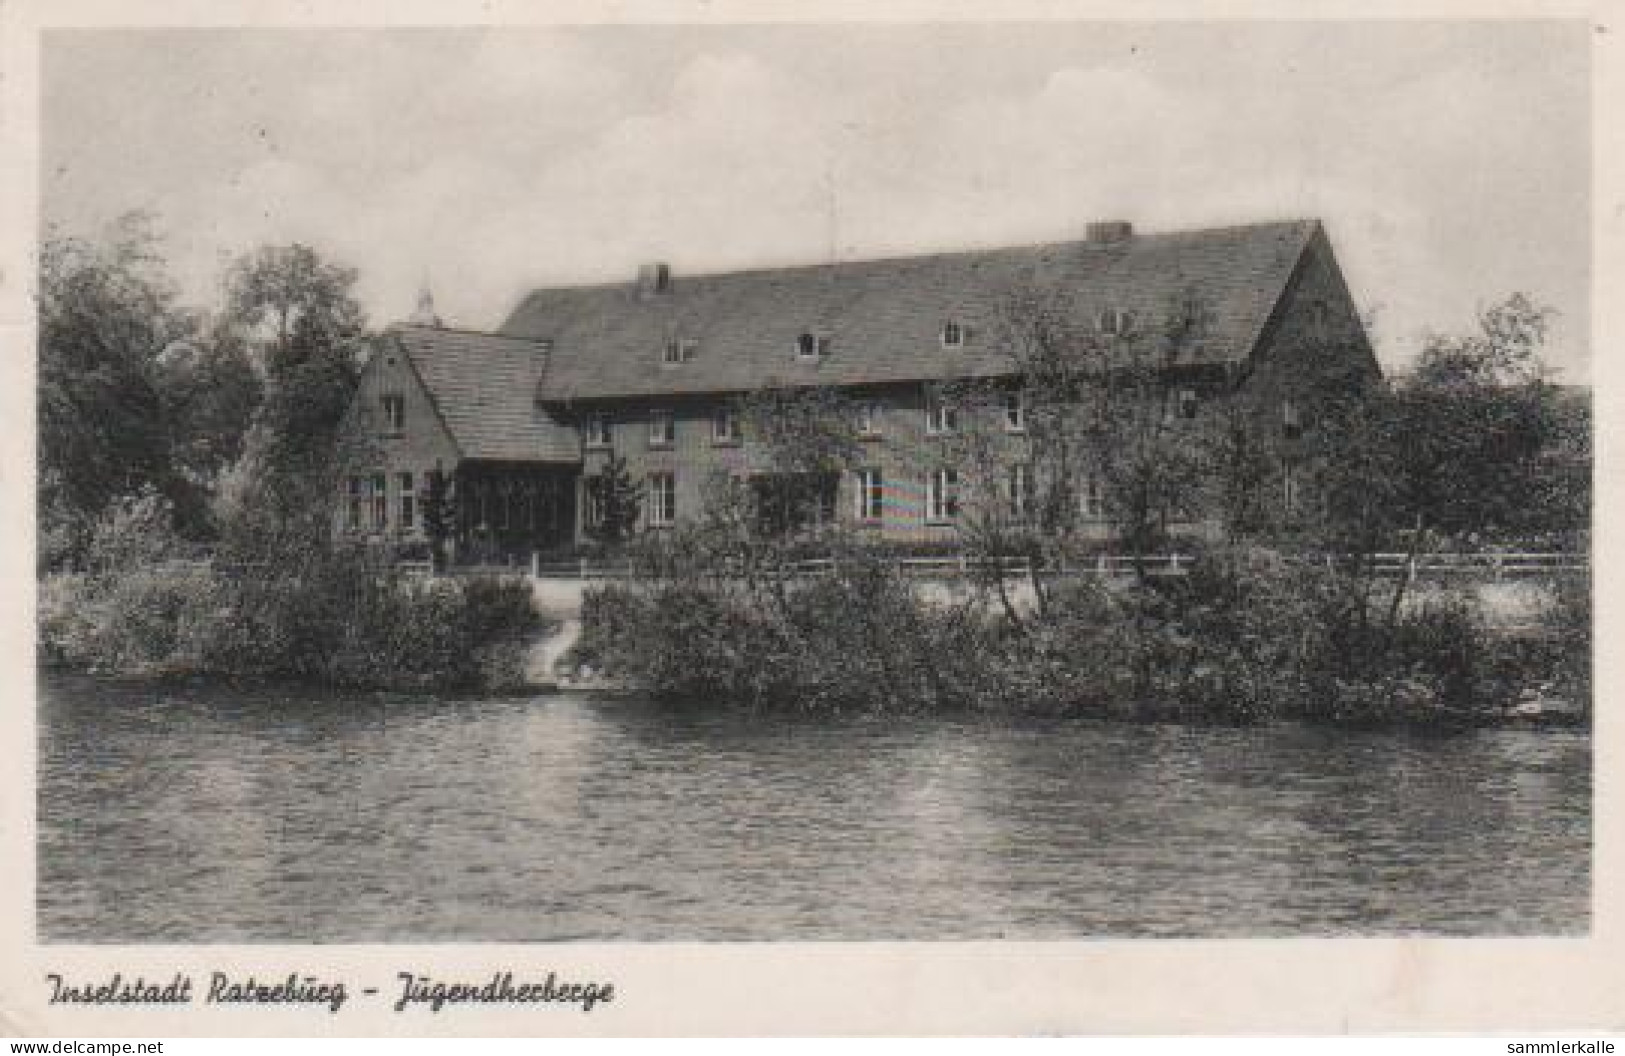 191 - Inselstadt Ratzeburg - Jugendherberge - 1958 - Ratzeburg